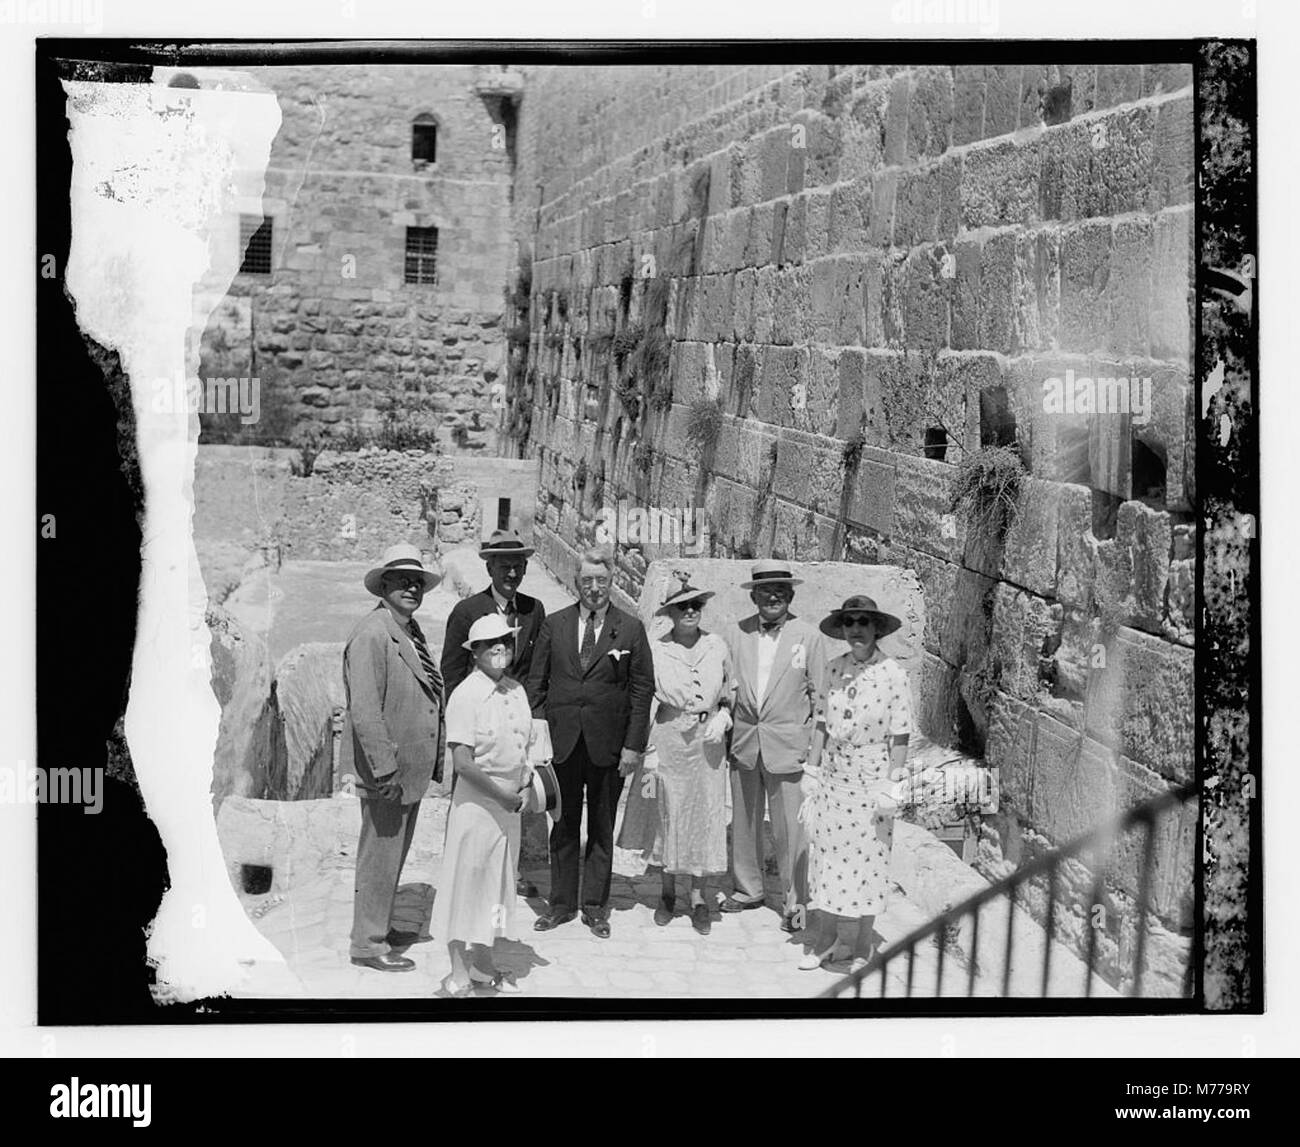 Половничество. Стена плача 1967. Стена плача в Иерусалиме. Солдаты у стены плача 1967.